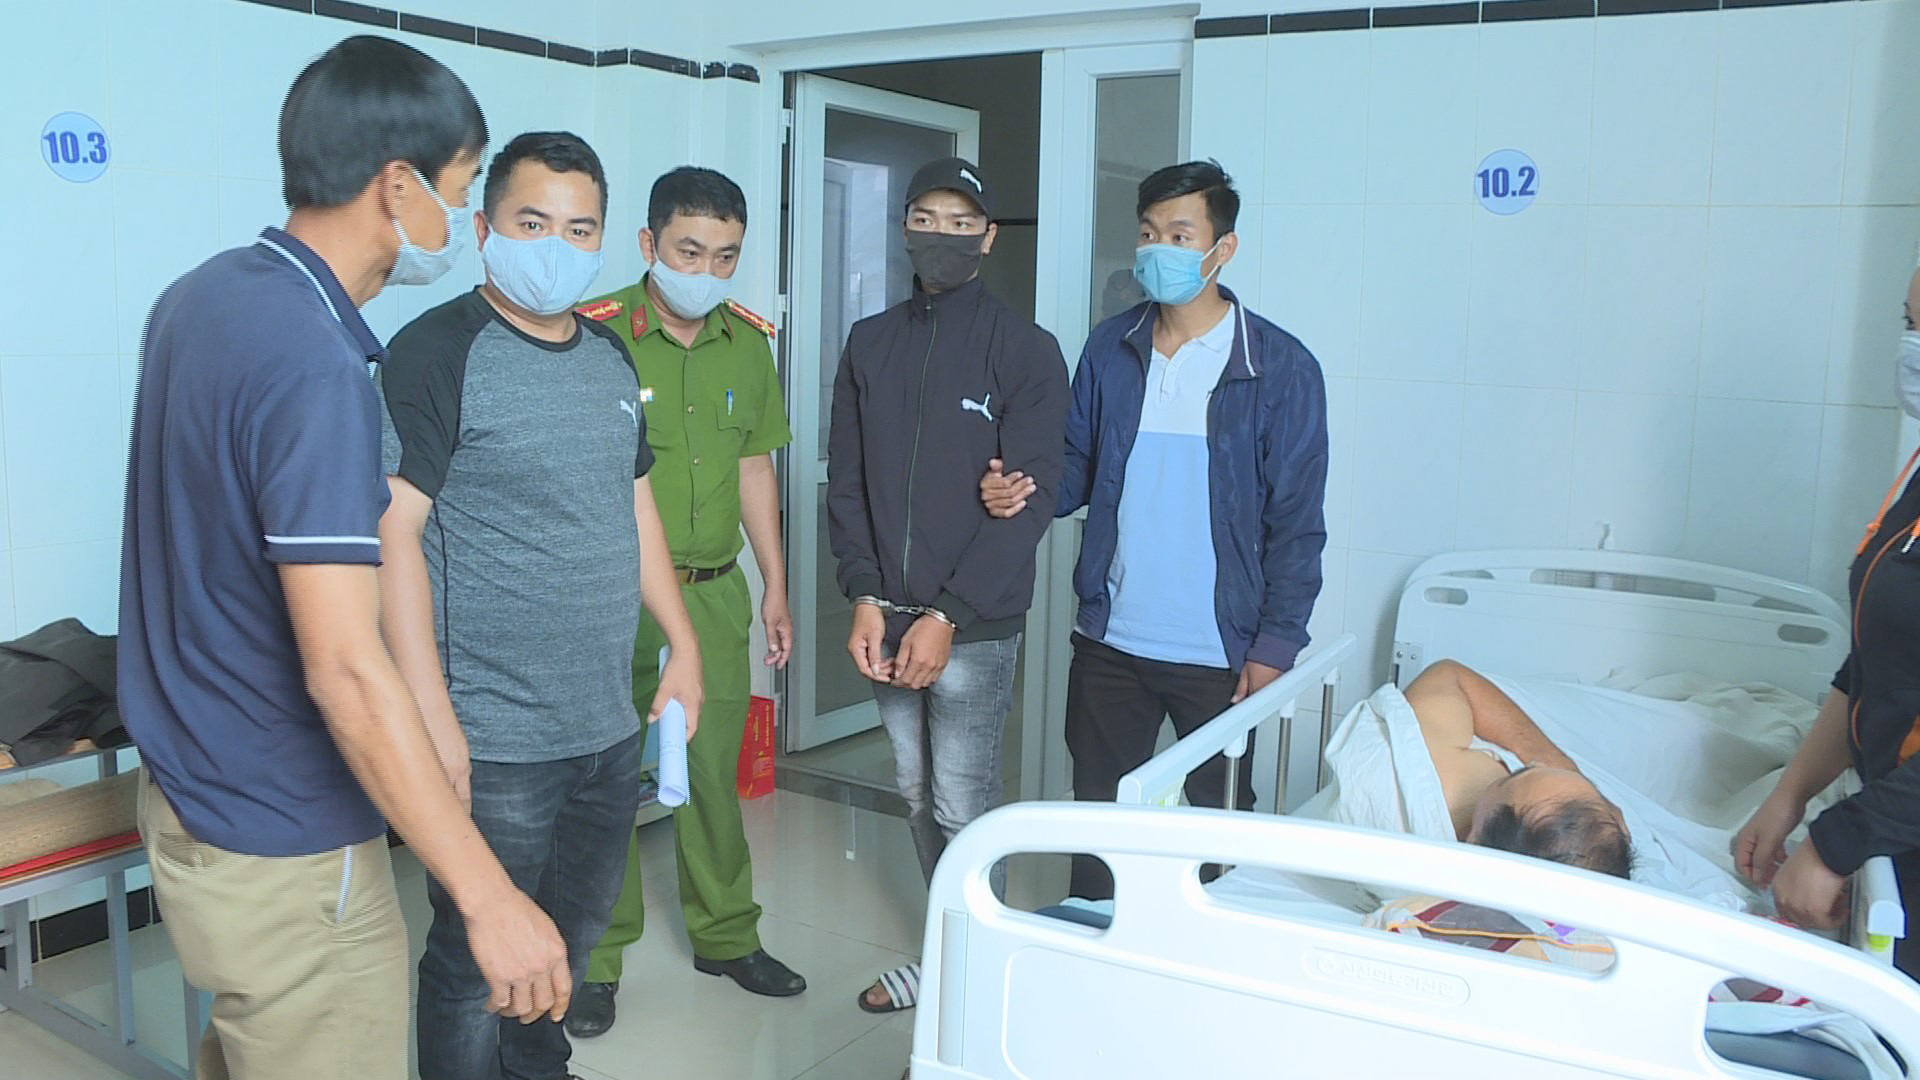 Cảnh sát vây bắt 2 đối tượng chuyên trộm cắp trong bệnh viện - Ảnh 2.